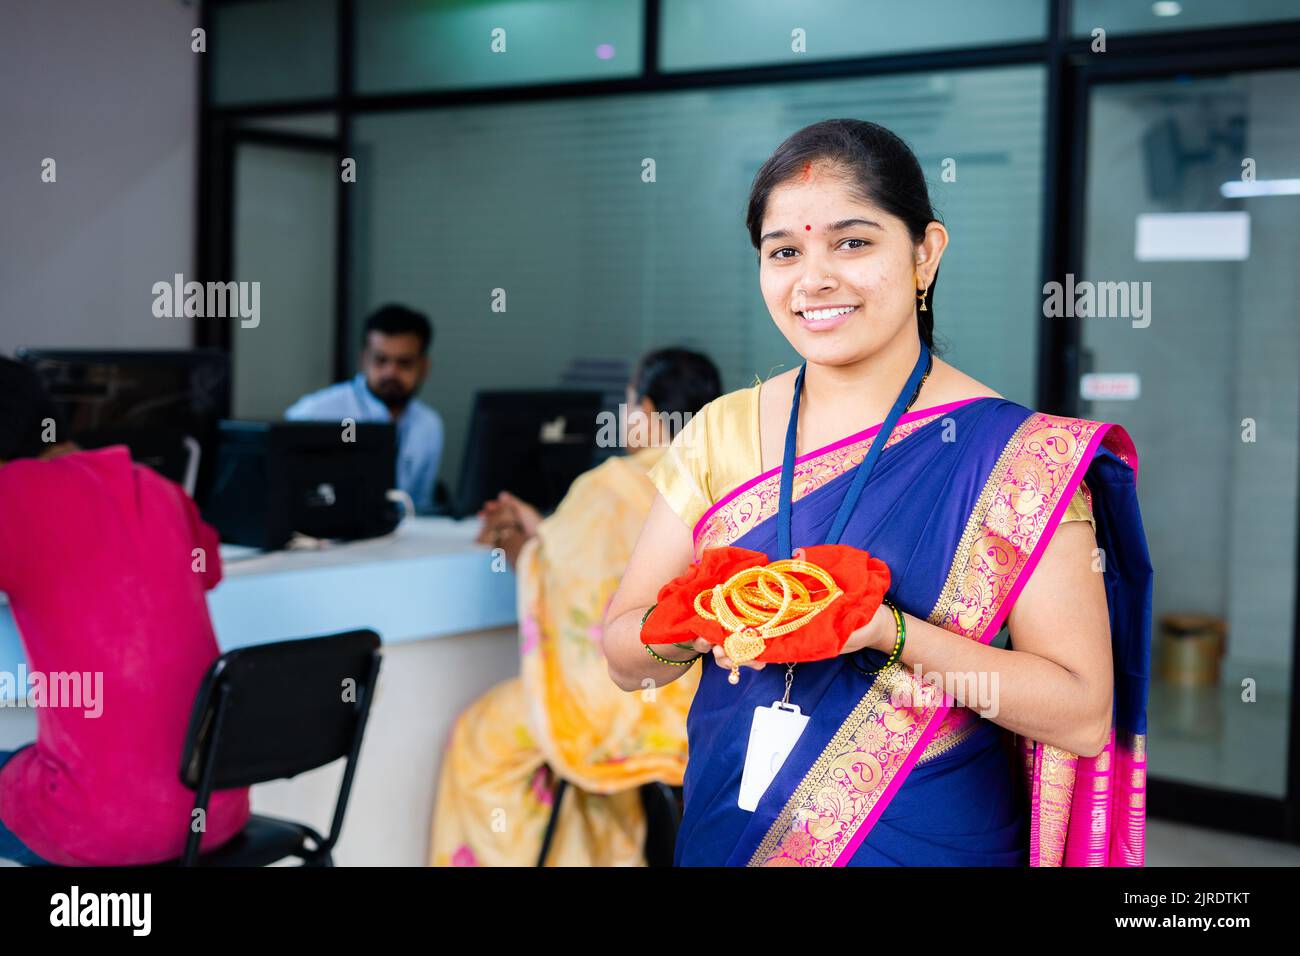 Glücklich lächelnde Frau bei der Bank mit Goldschmuck in der Hand Blick Kamera bei der Bank - Konzept der Golddarlehen, Finanz-oder Bankservice und Investitionspläne Stockfoto